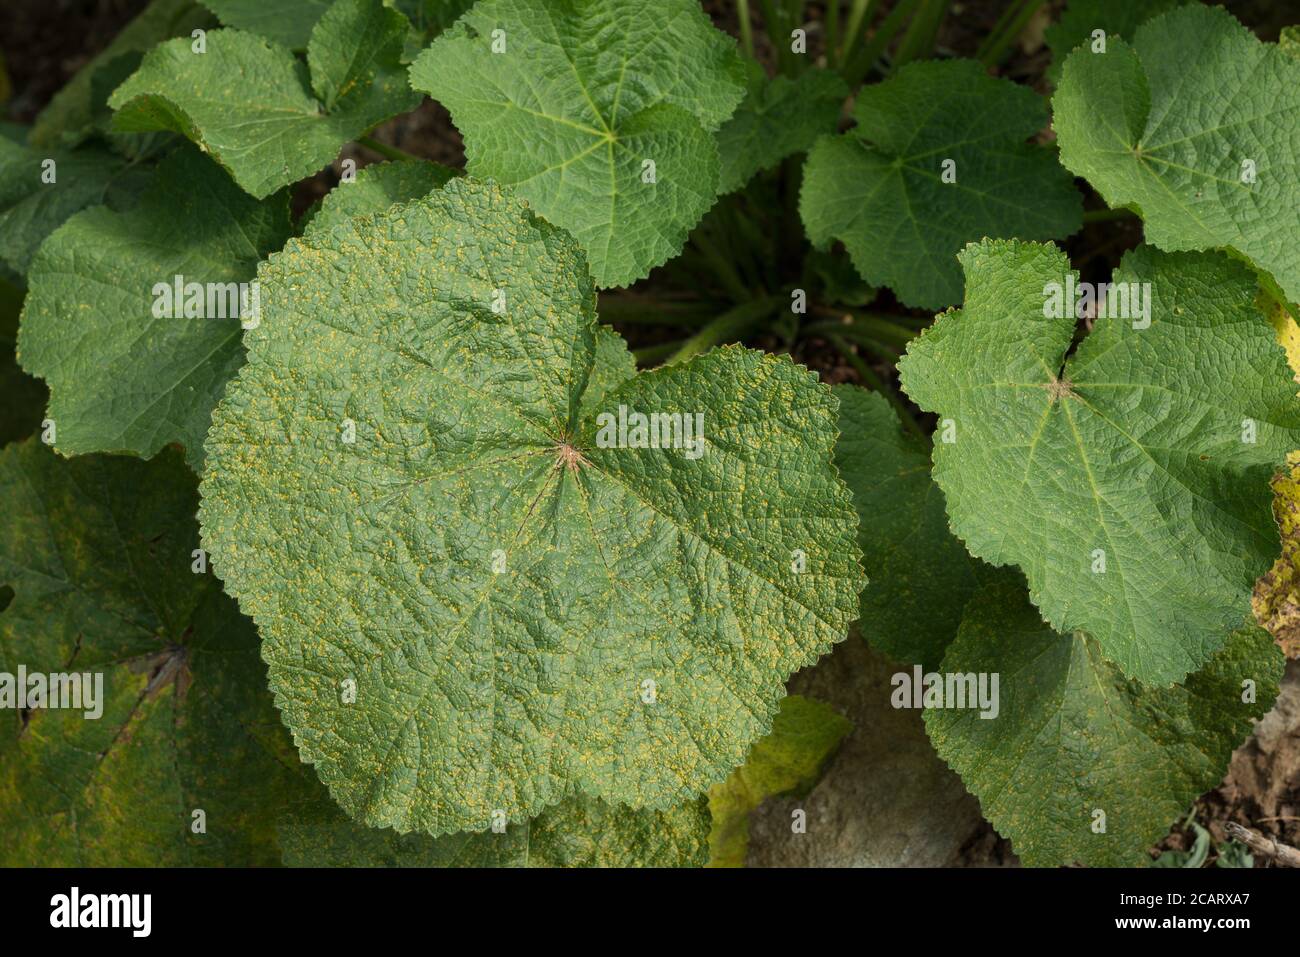 Hollyhock Rost durch den Pilz Puccinia heterospora oder P.malvacearum niedriger verursacht Die Blätter der breiten Blattpflanze, die von der Krankheit bedeckt ist, sind heiß Feuchter Zustand Stockfoto